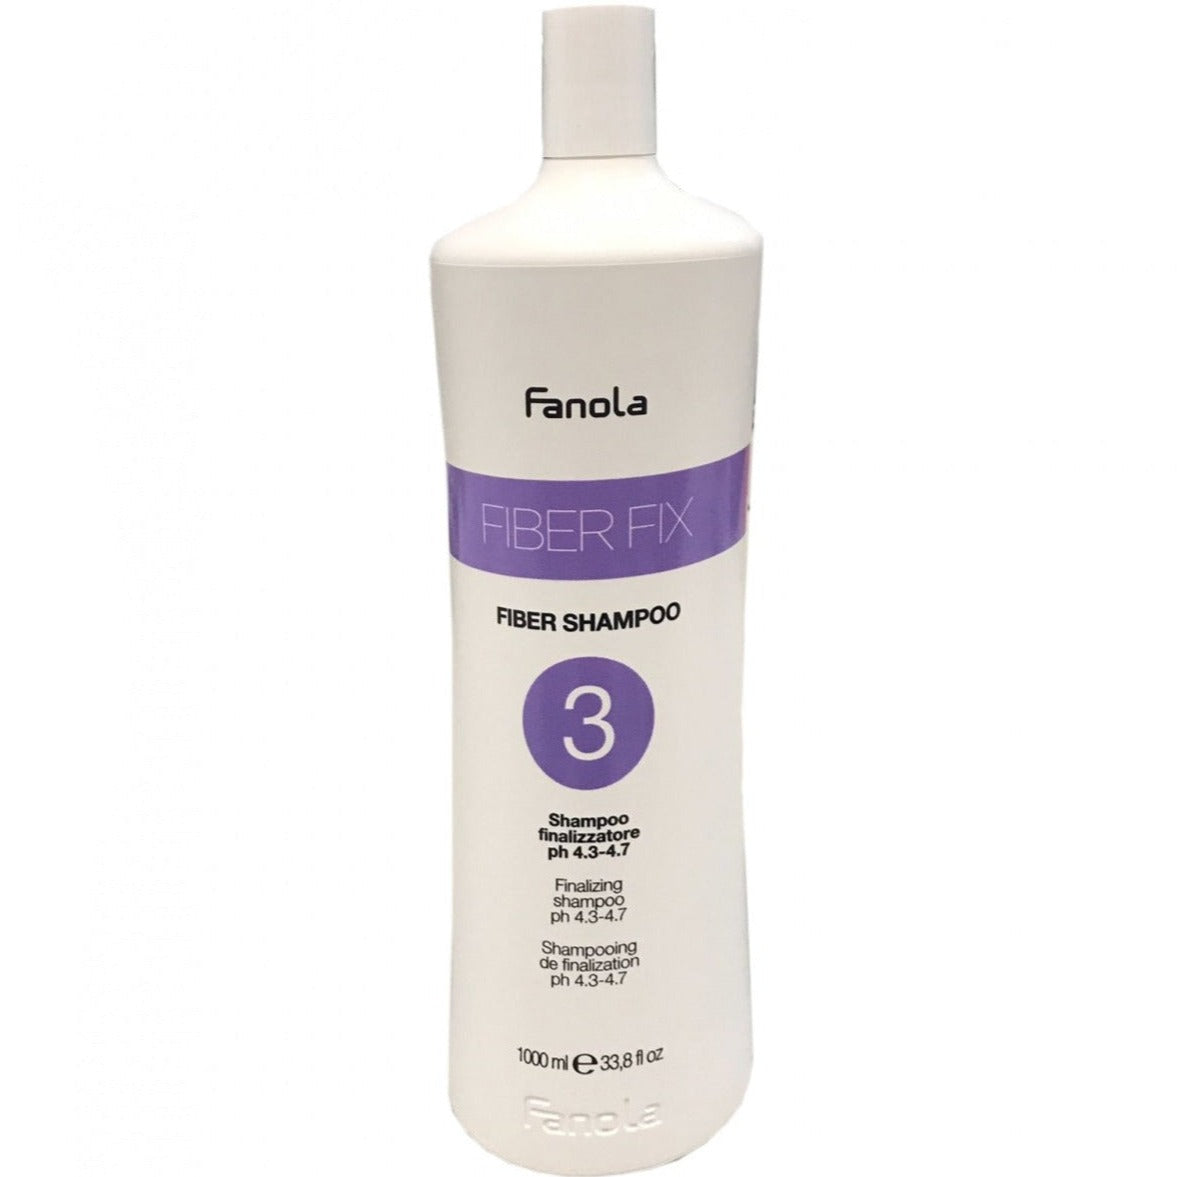 Finalizer Shampoo pH 4,3-4,7 Fiber Shampoo 3 Fibre Fix Fanola 1000 ml